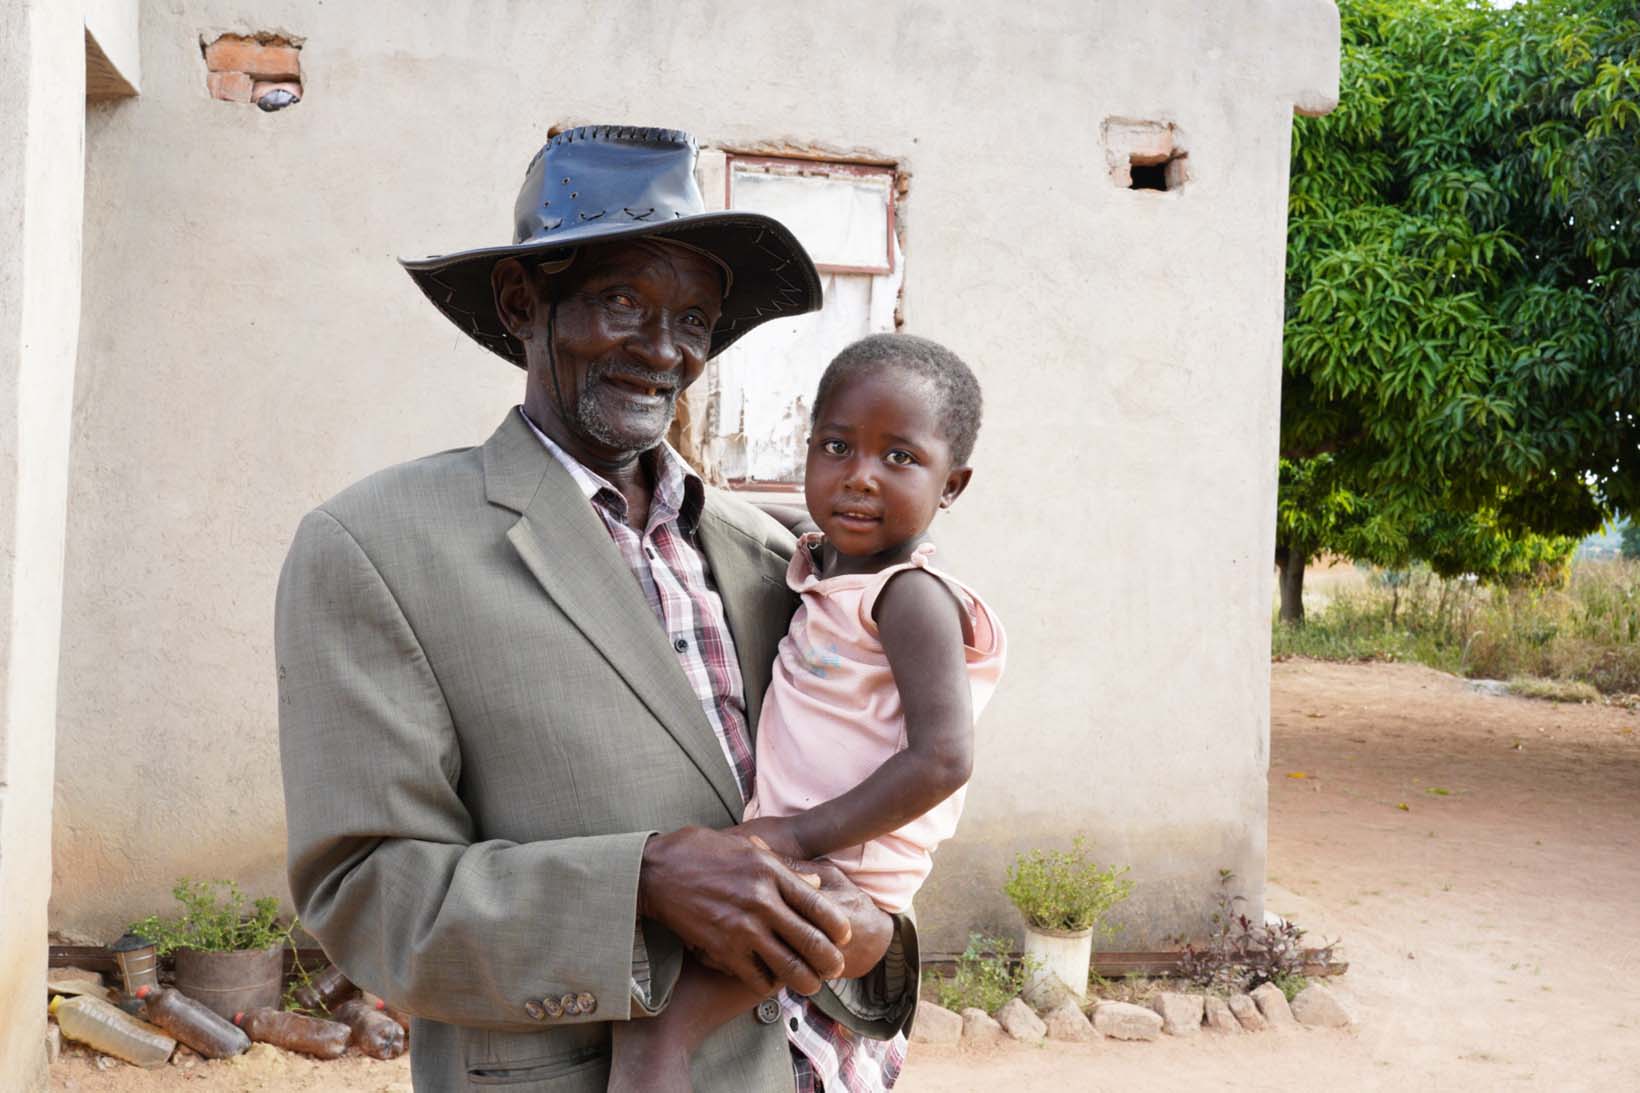 Paul steht vor seinem einfachen Haus und hat seine kleine Enkelin auf dem Arm. Beide lächeln.